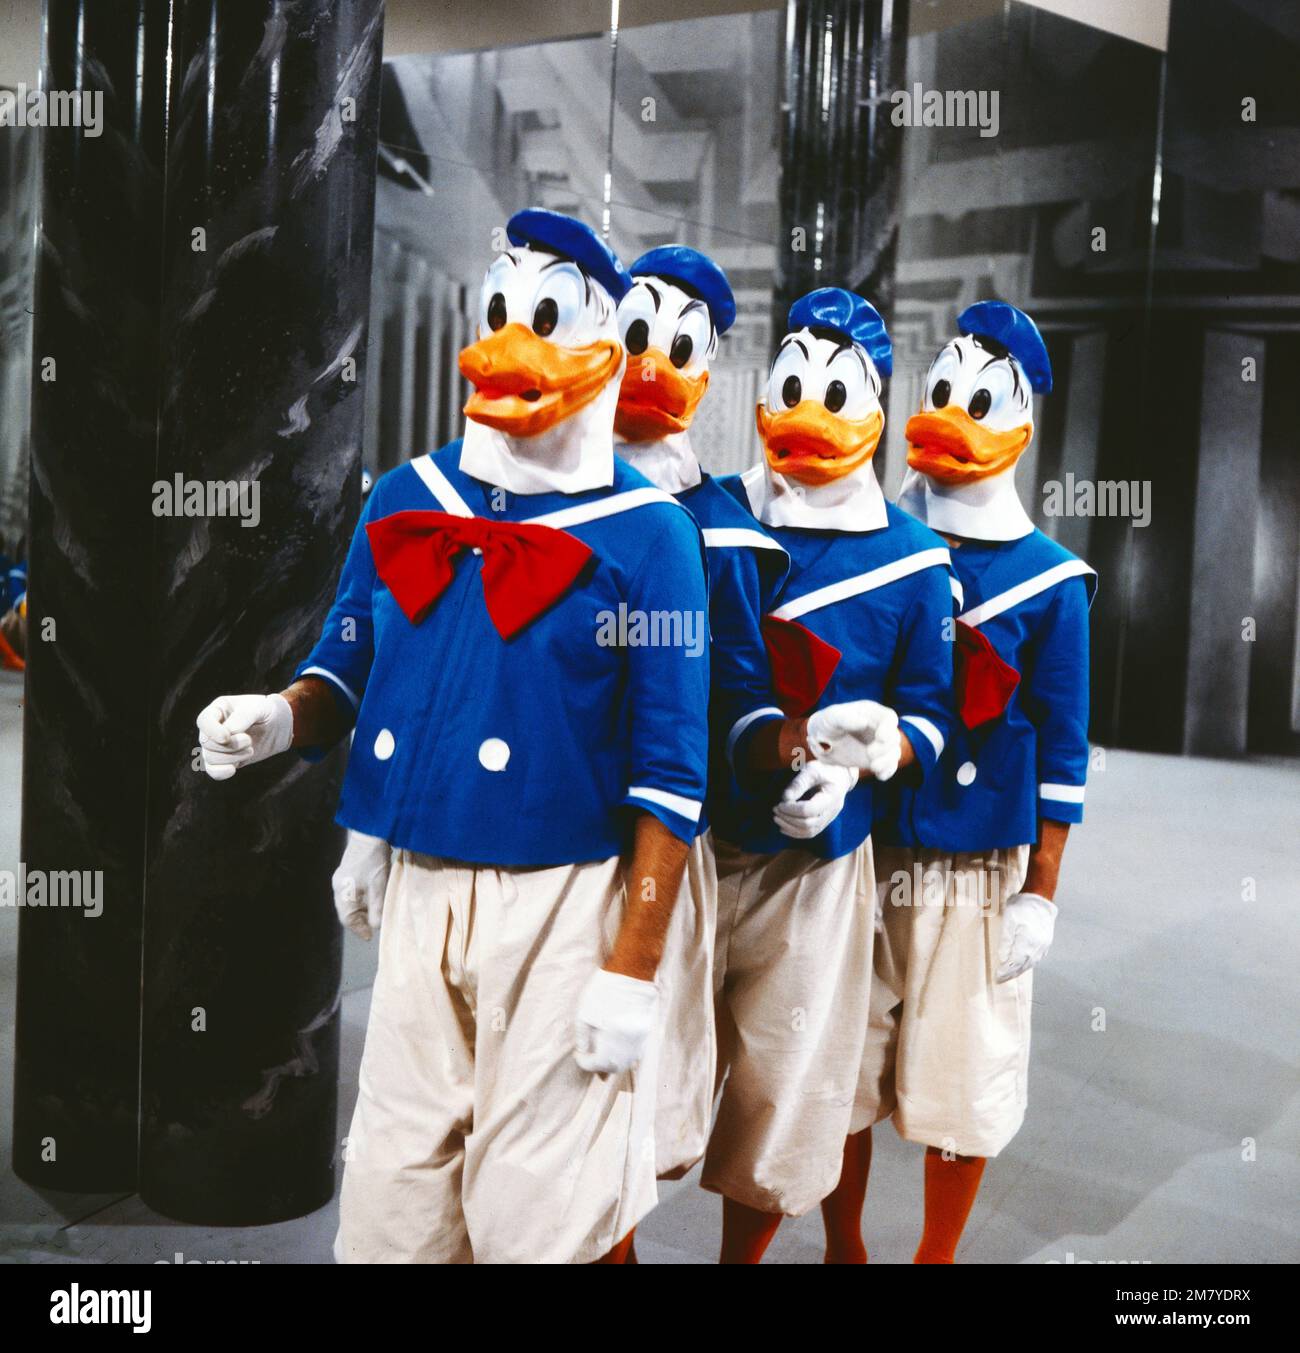 Für Donald - mit liebem Gruss, Arbeitstitel 'Quak', Fernsehspiel, Deutschland 1981, Regie: Cornelia Schlede, Darsteller: Szenenfoto mit vier Donald Ducks Stock Photo